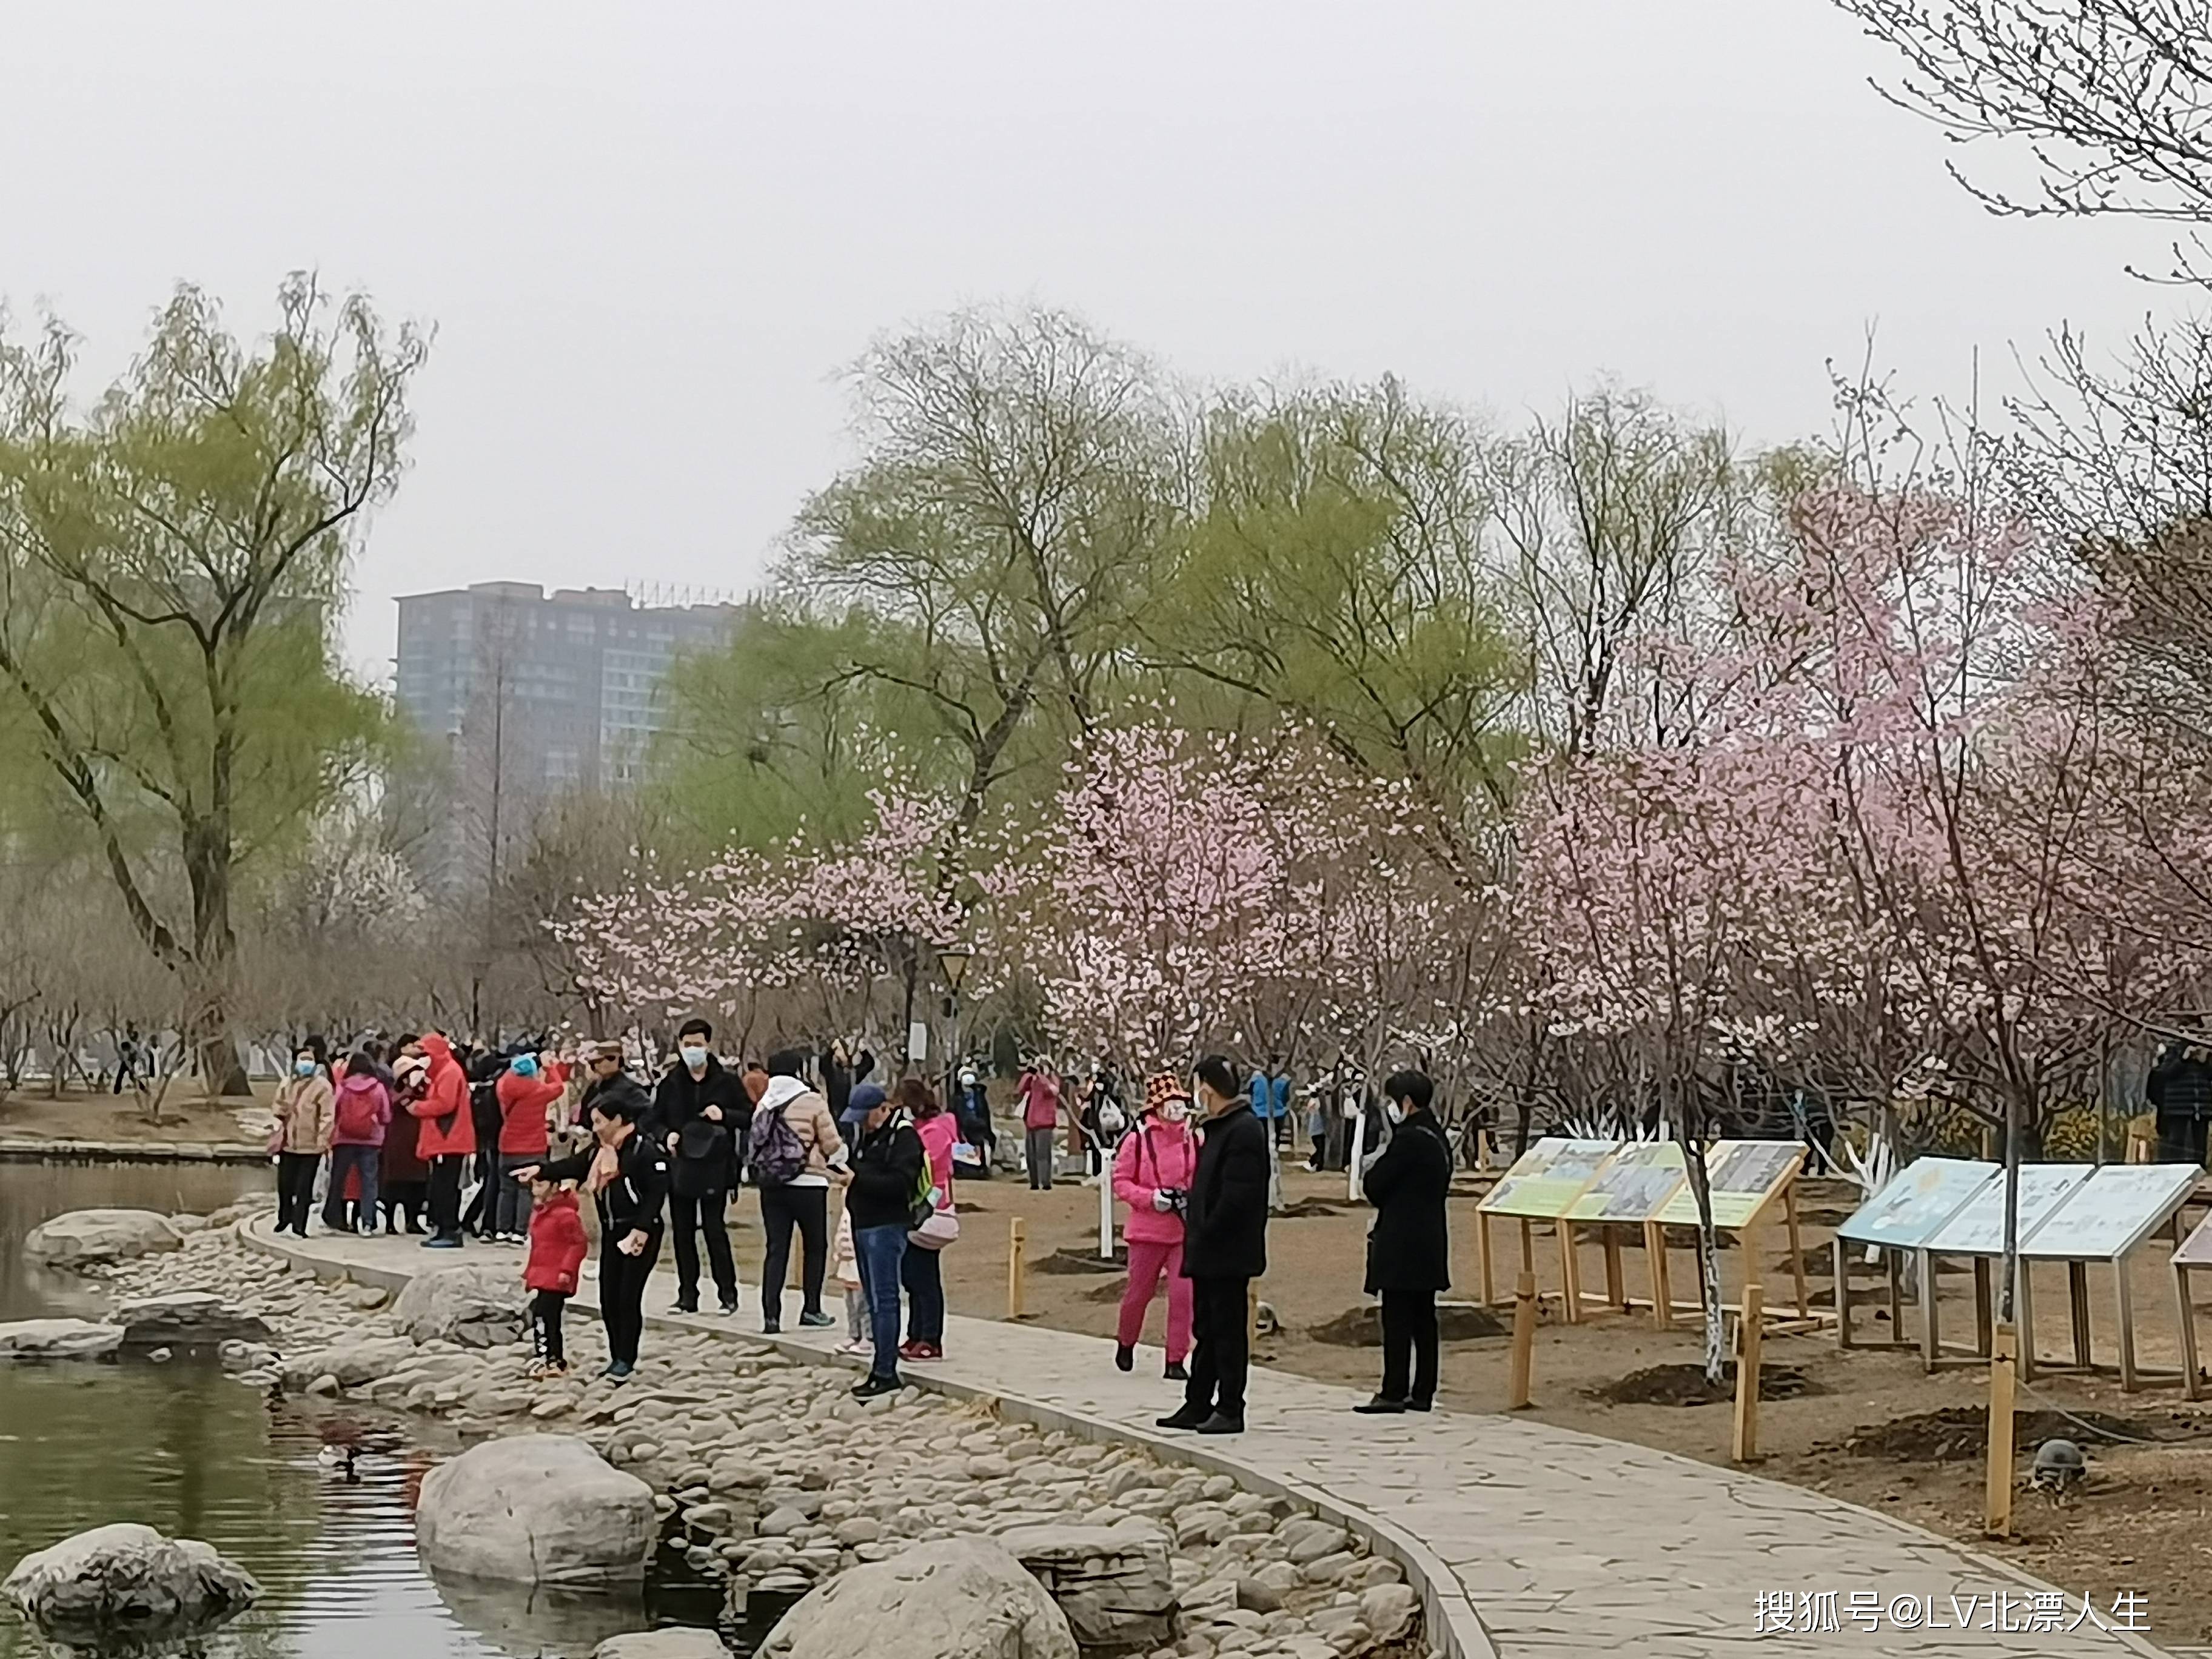 这里的樱花太美了，人山人海的玉渊潭公园第32届樱花节见闻